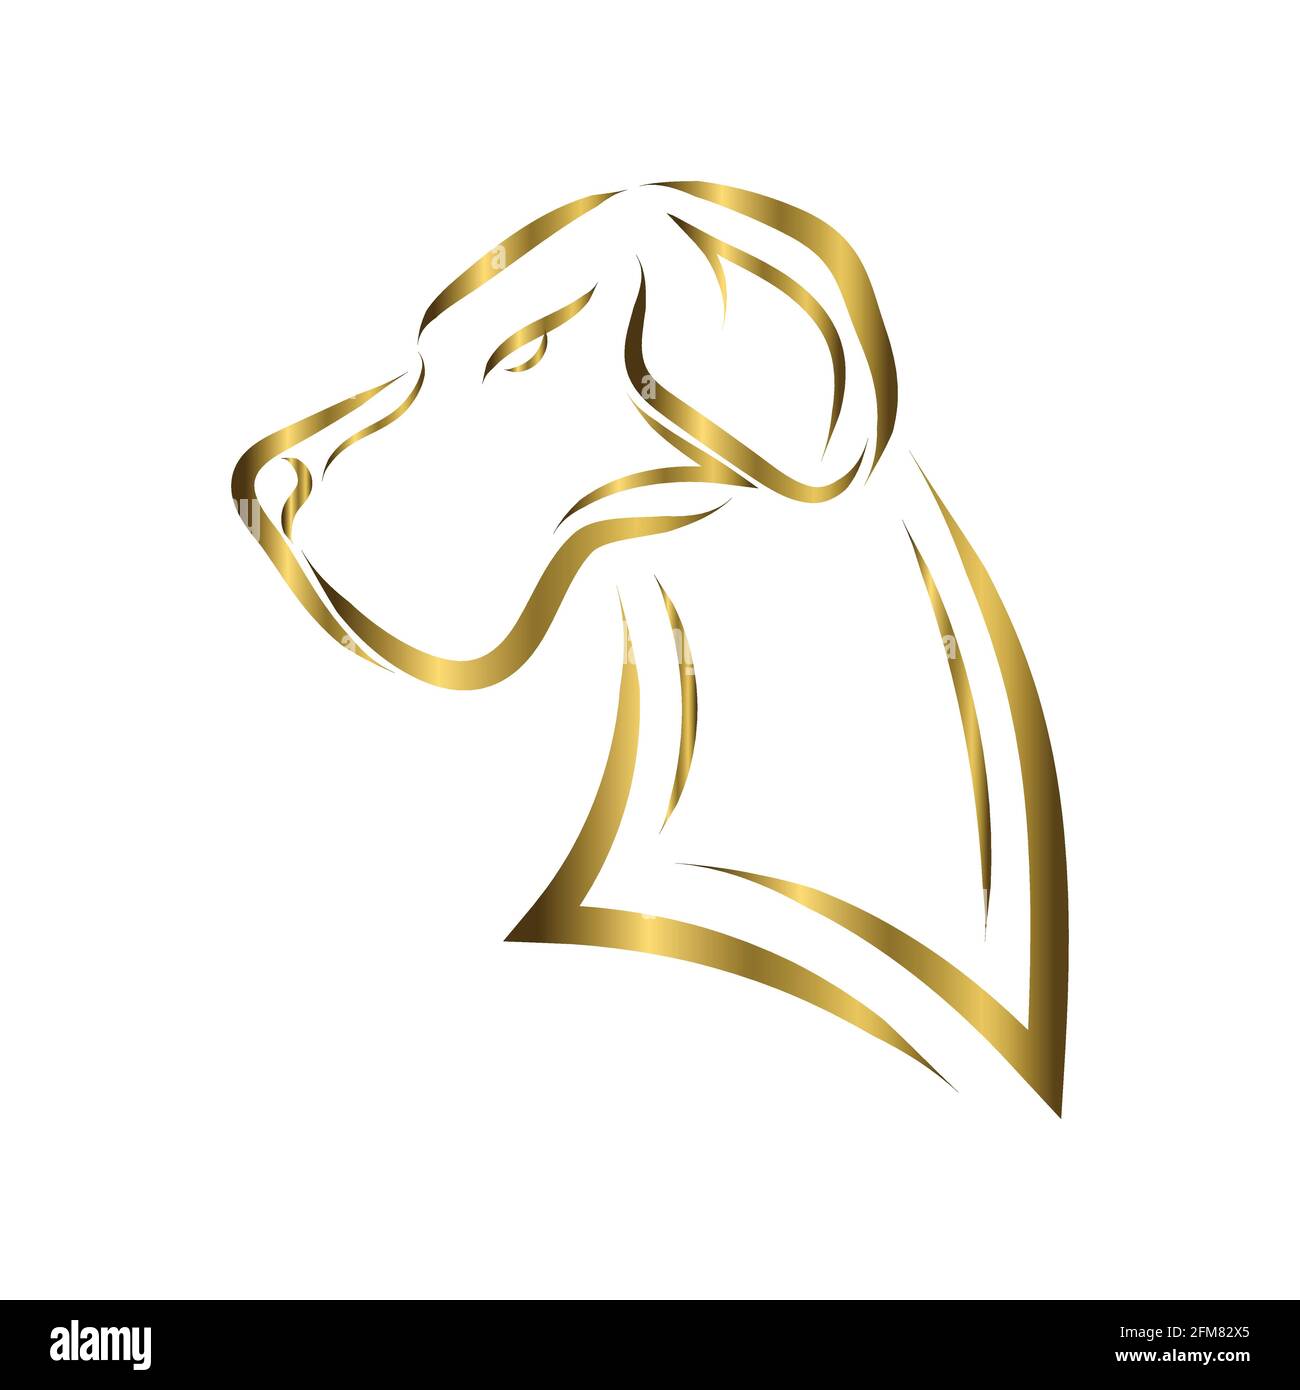 L'art de la ligne d'or de la tête de chien de Great Dane. Bon usage pour symbole, mascotte, icône, avatar, tatouage, T-shirt, logo ou tout autre motif que vous voulez Illustration de Vecteur